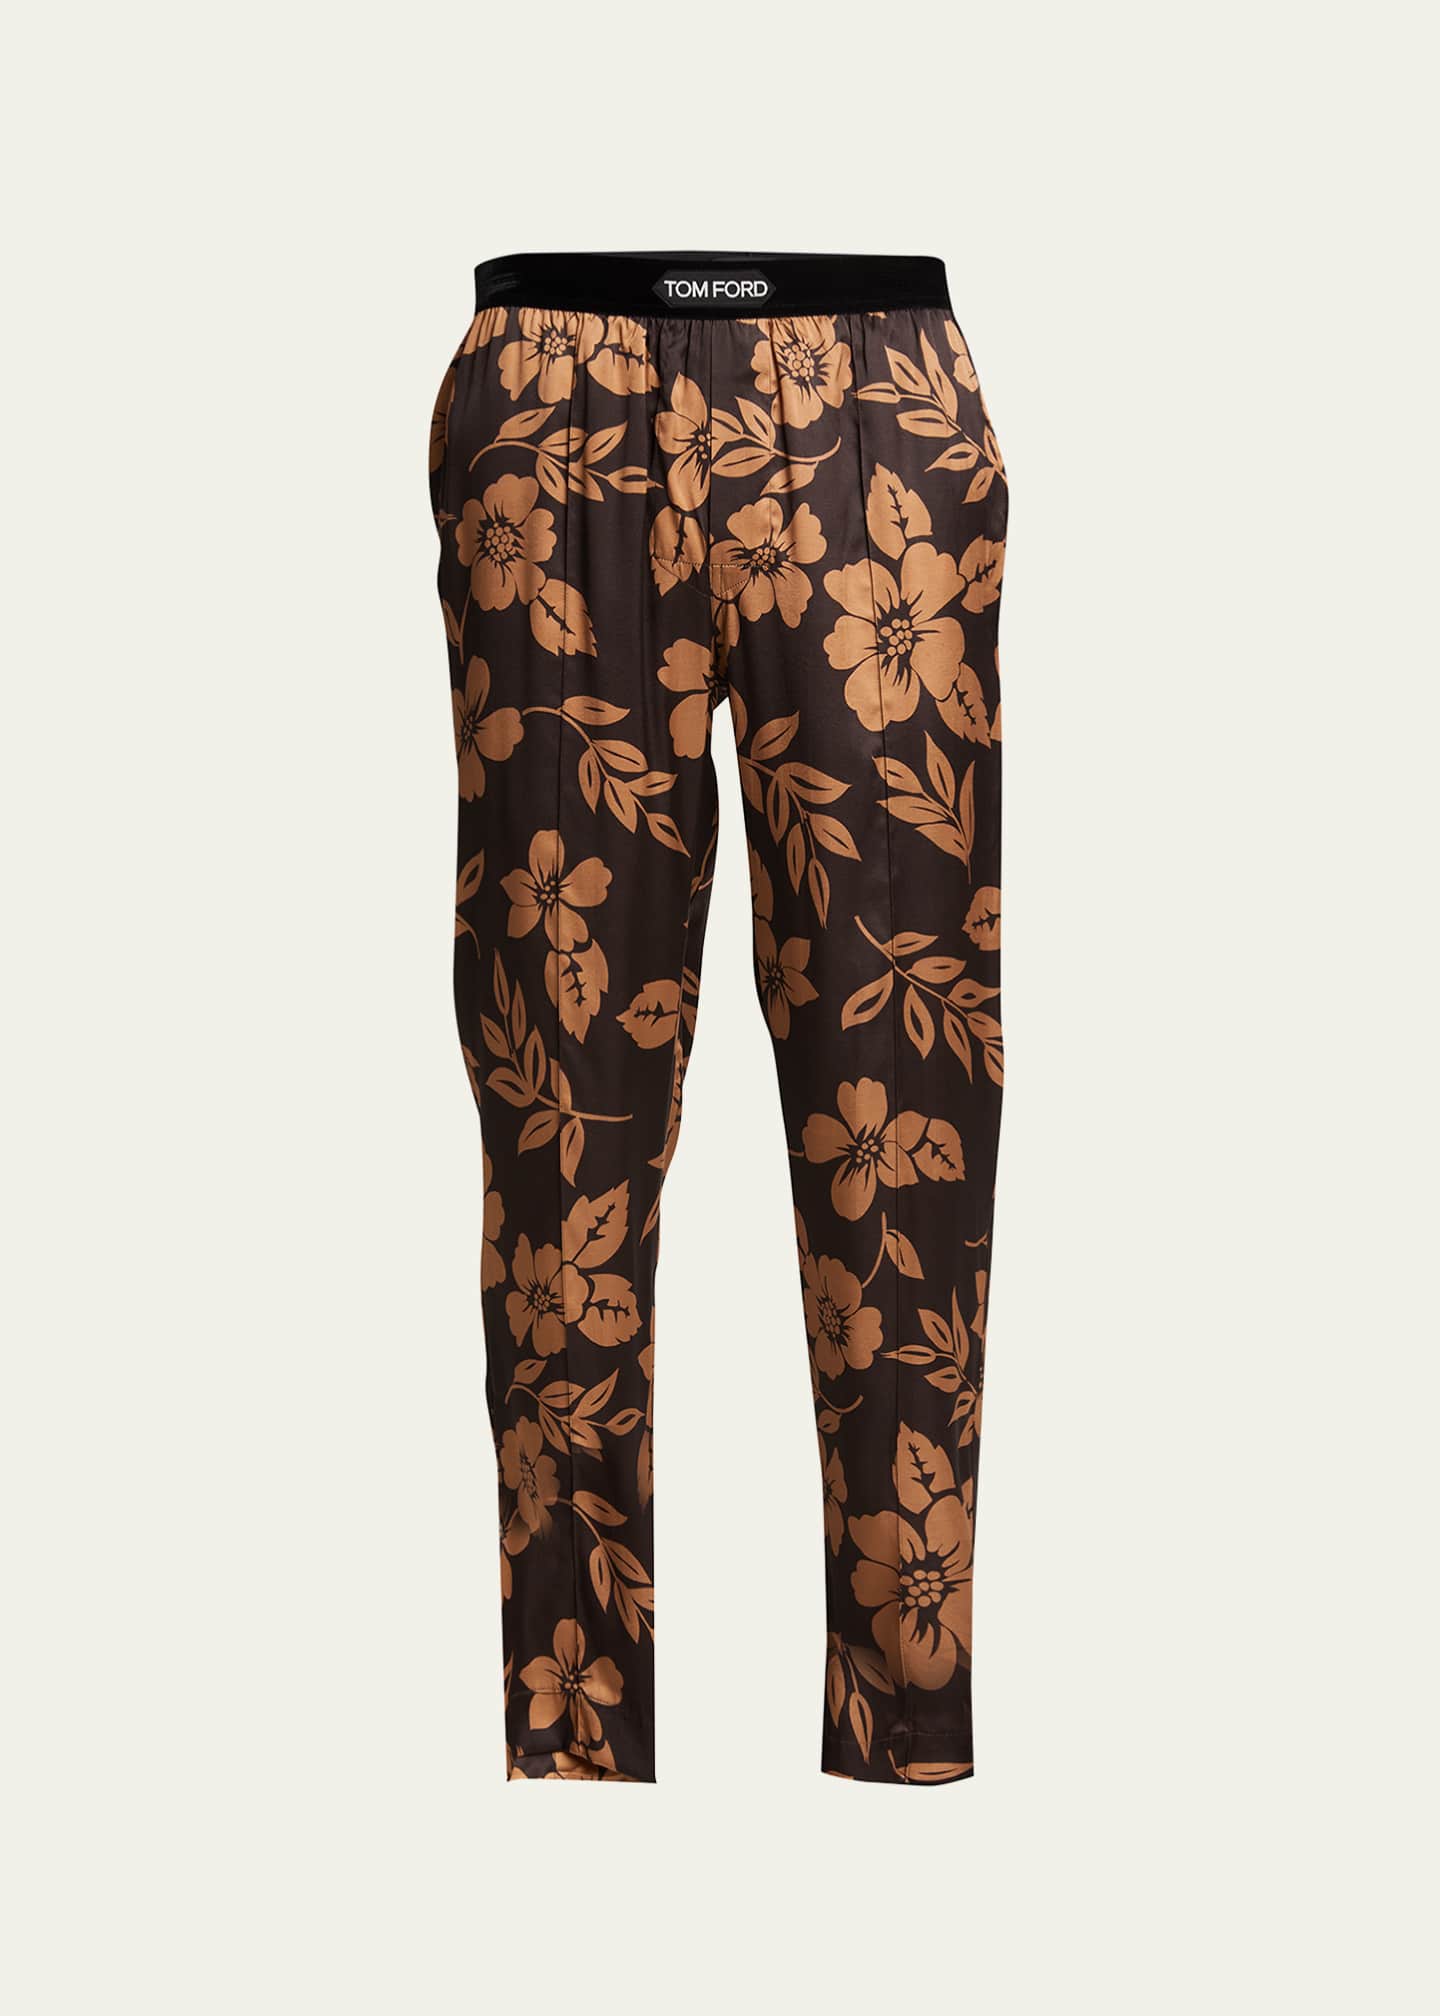 TOM FORD Men's Floral Silk Pajama Pants - Bergdorf Goodman